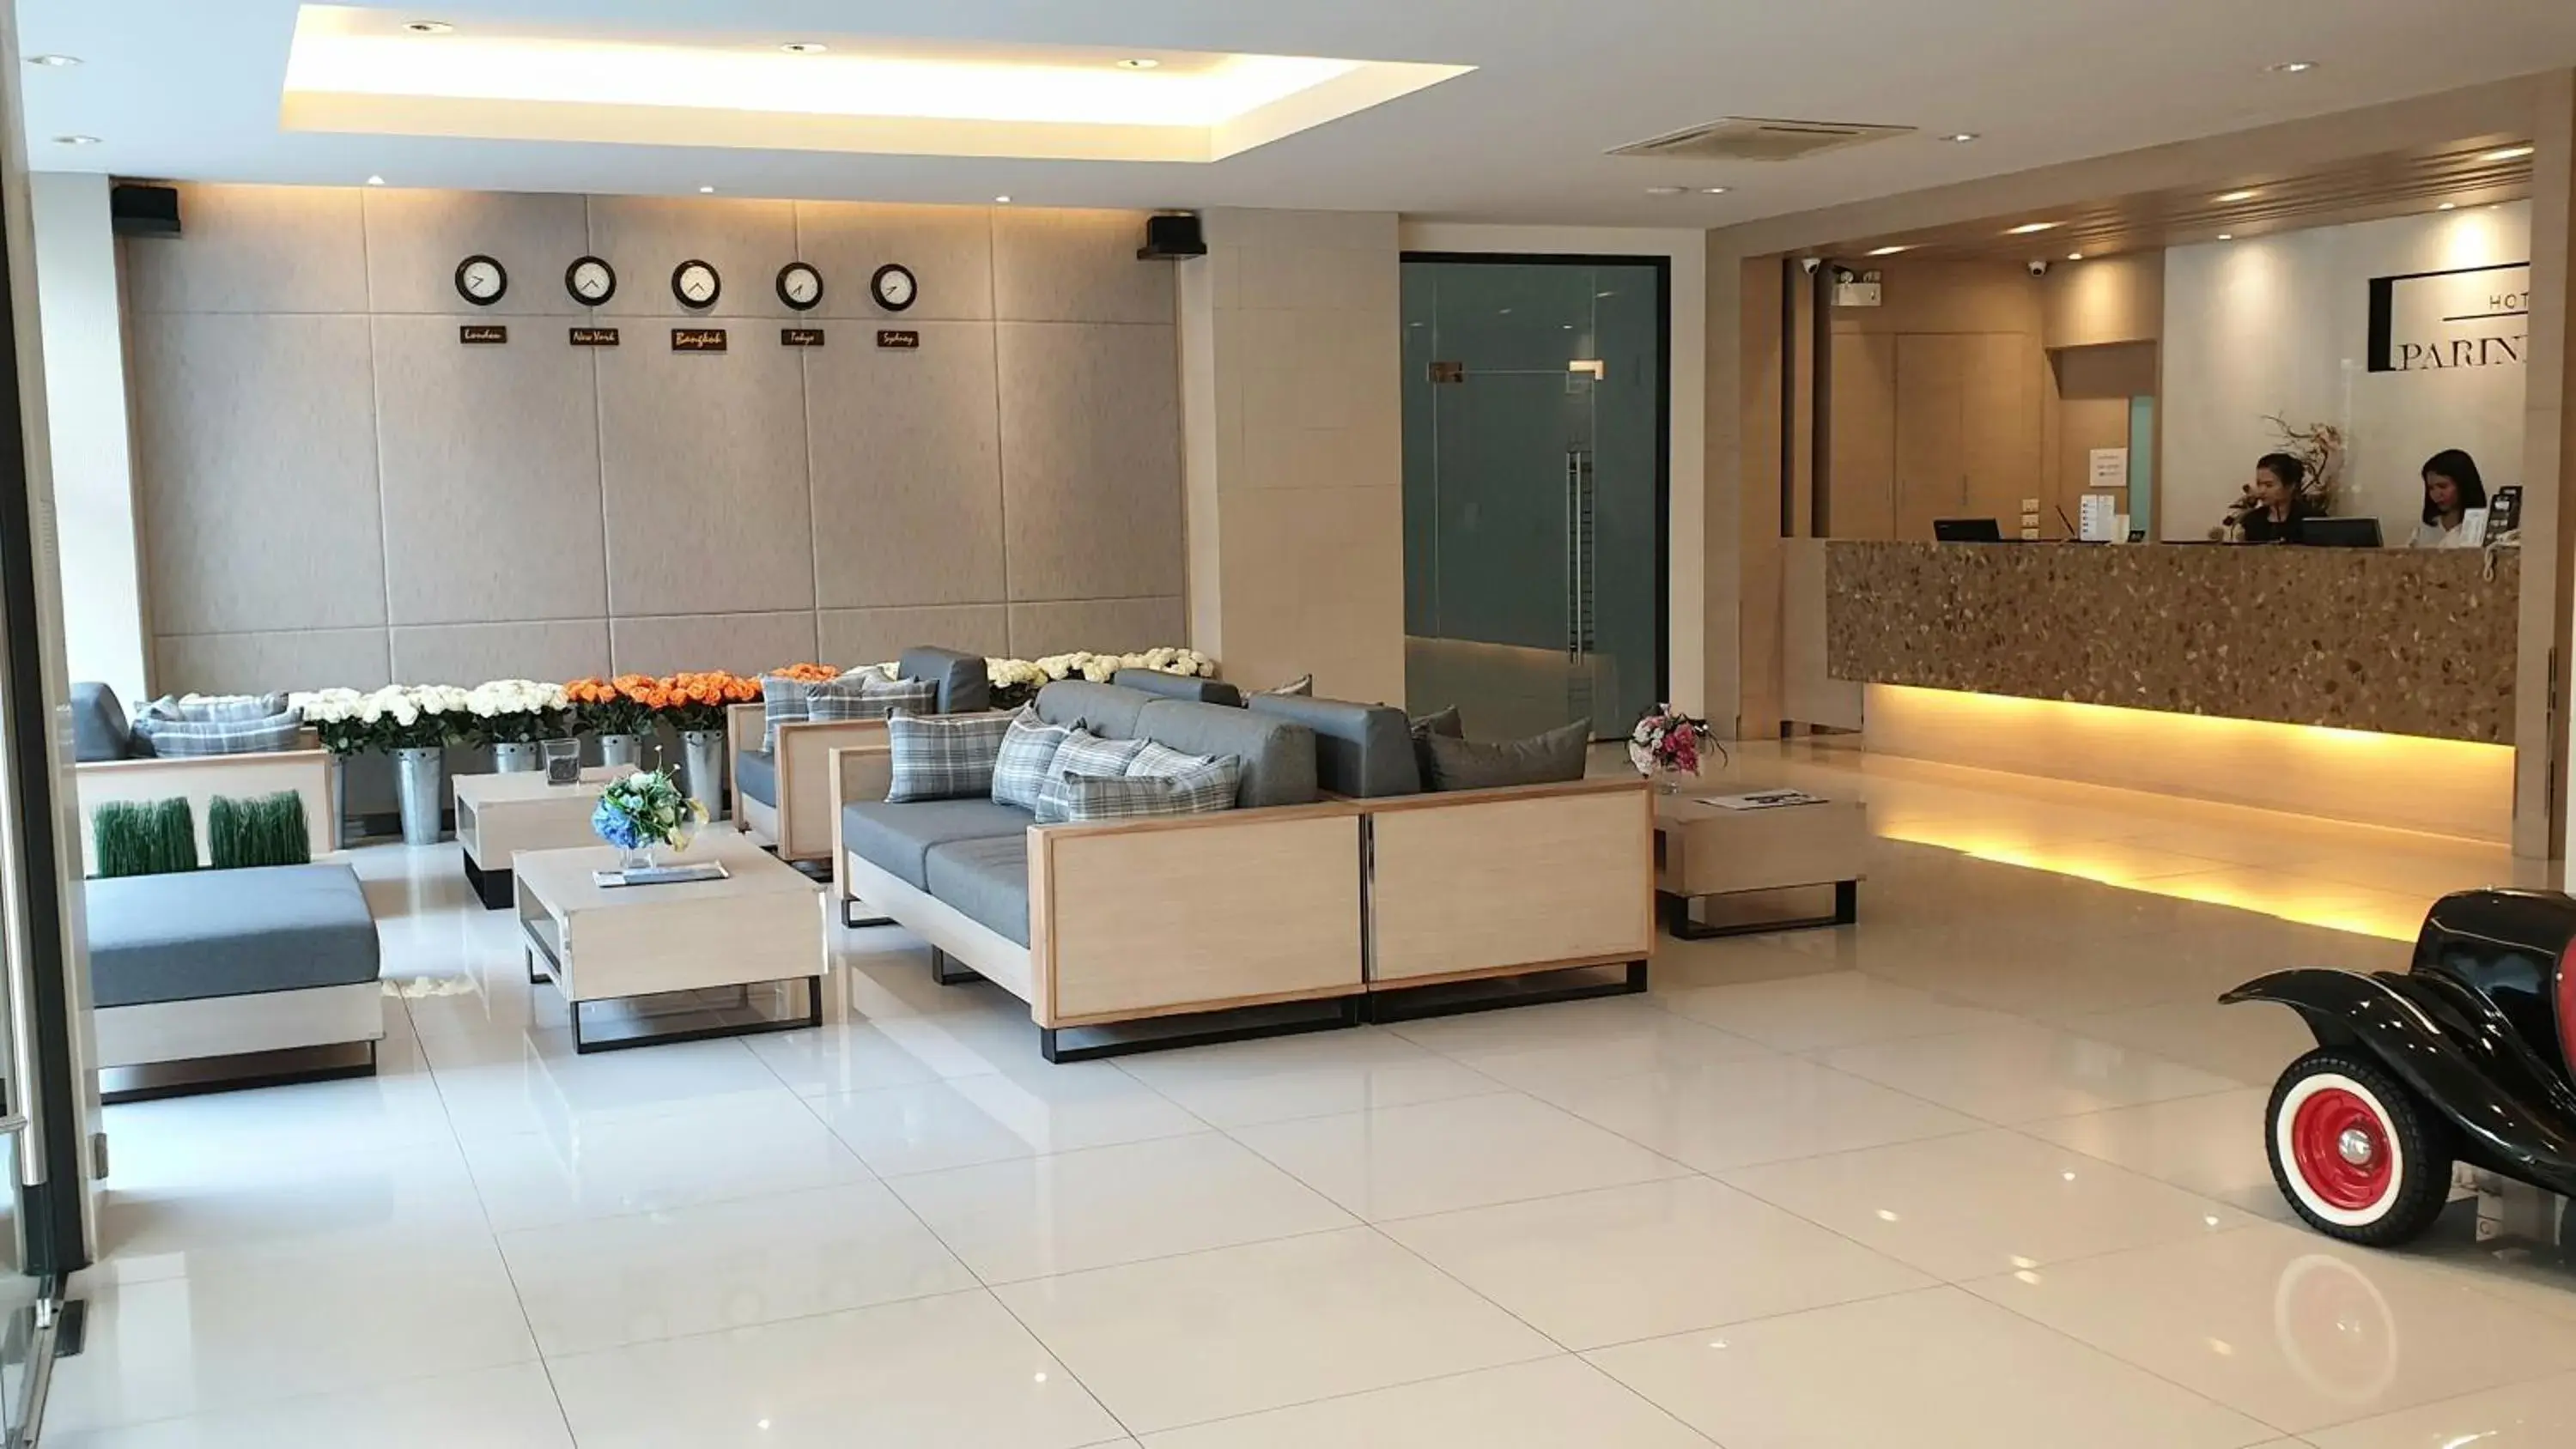 Lobby or reception, Lobby/Reception in Parinda Hotel